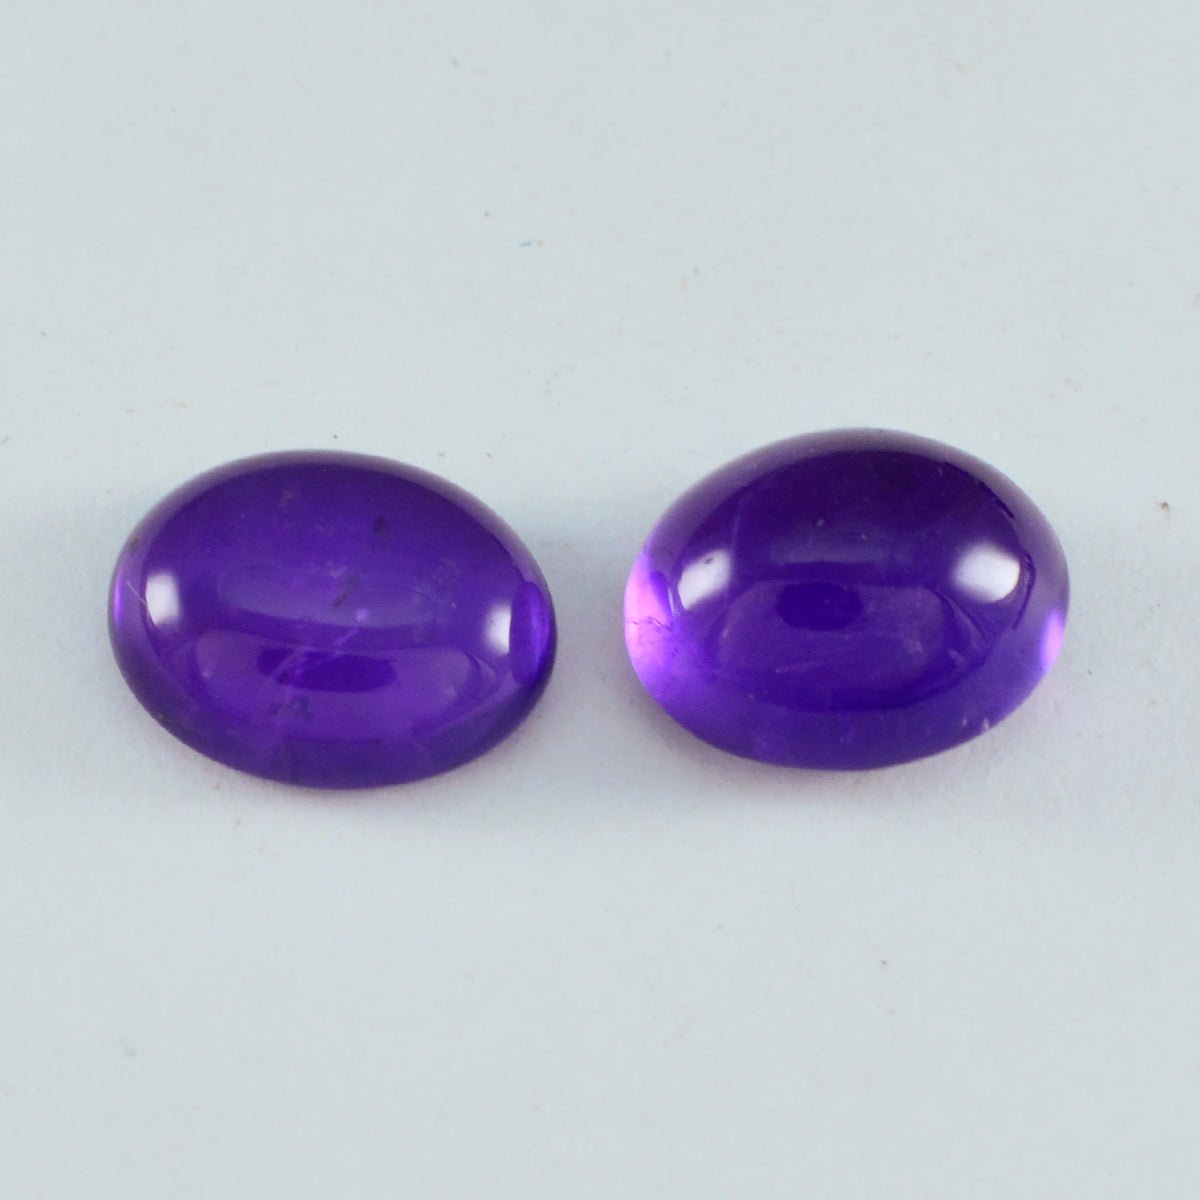 Riyogems 1 pieza cabujón de amatista púrpura 9X18mm forma ovalada gema de calidad atractiva